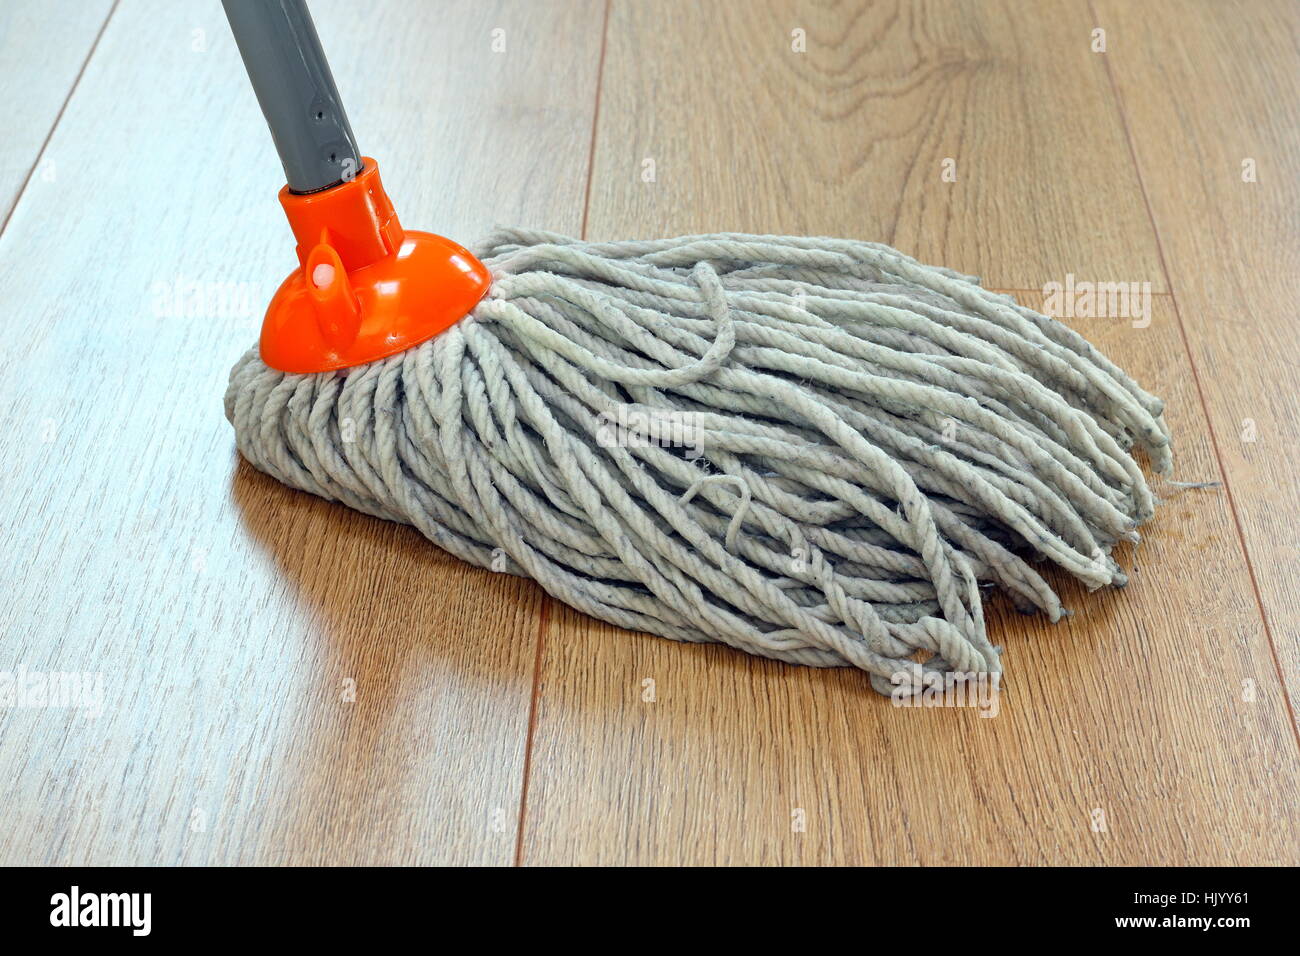 Détail d'un plancher en bois nettoyage mop Banque D'Images